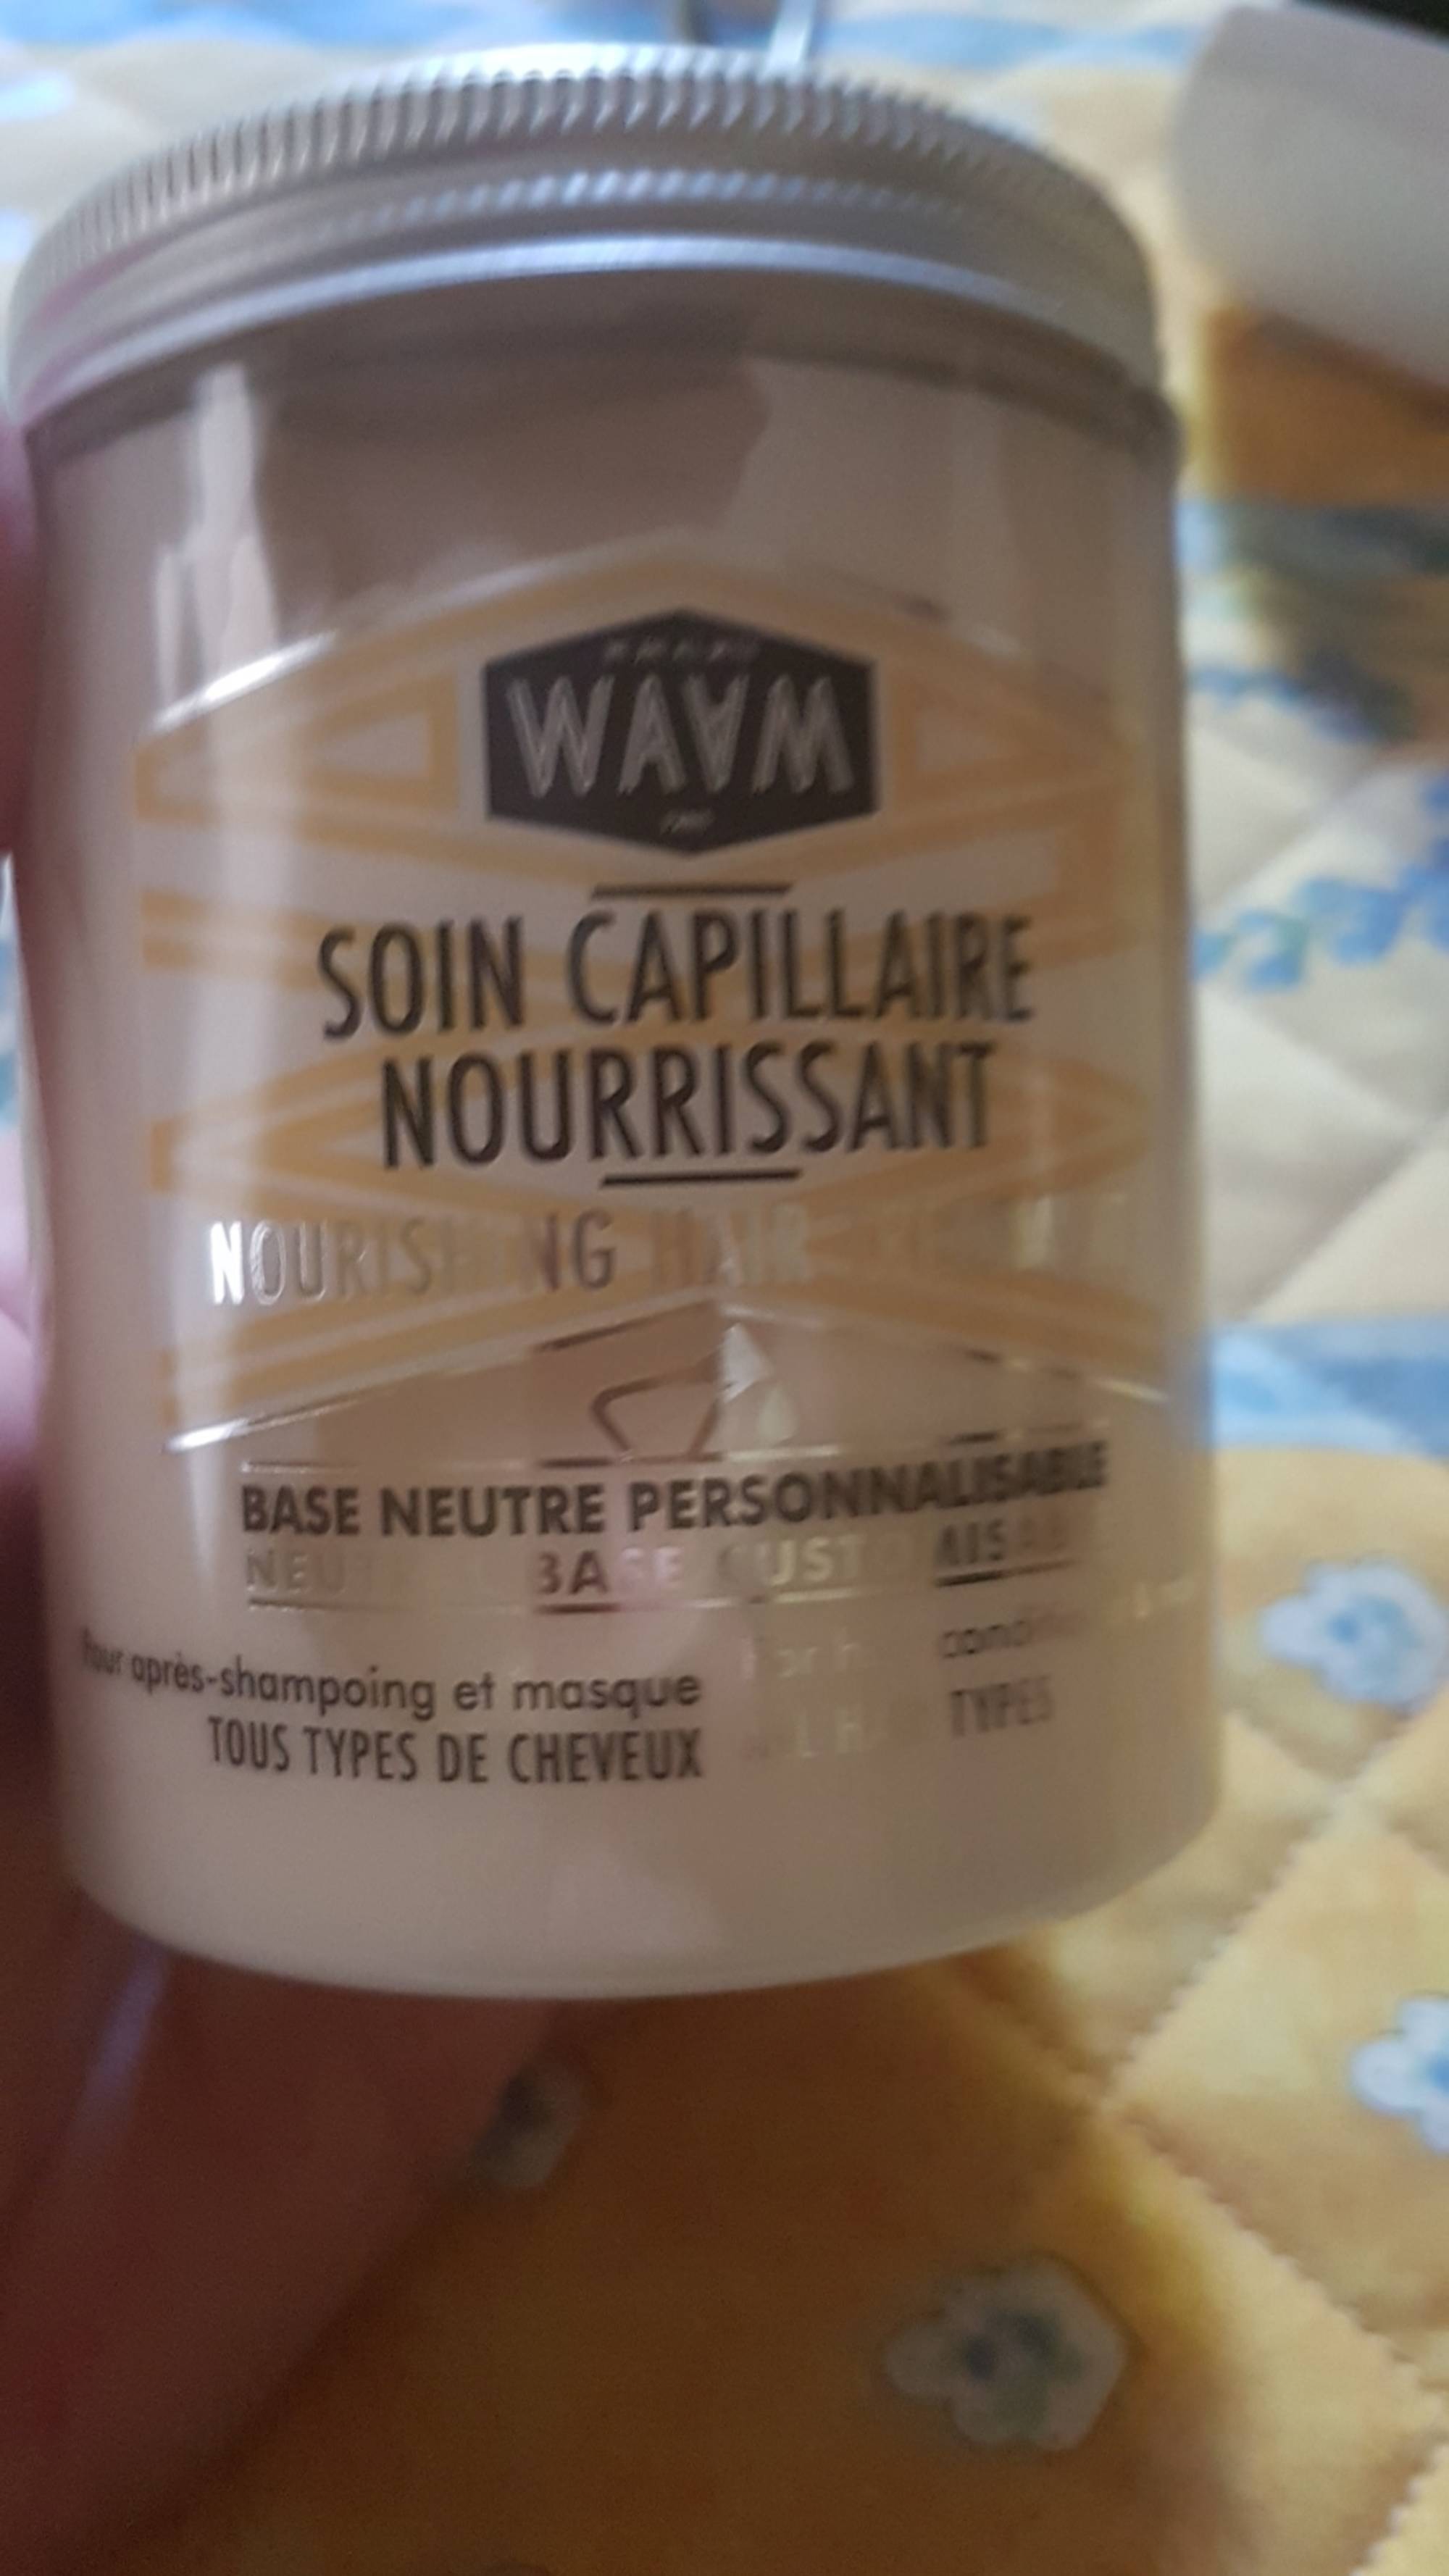 WAAM - Soin capillaire nourrissant pour après shampooing et masque